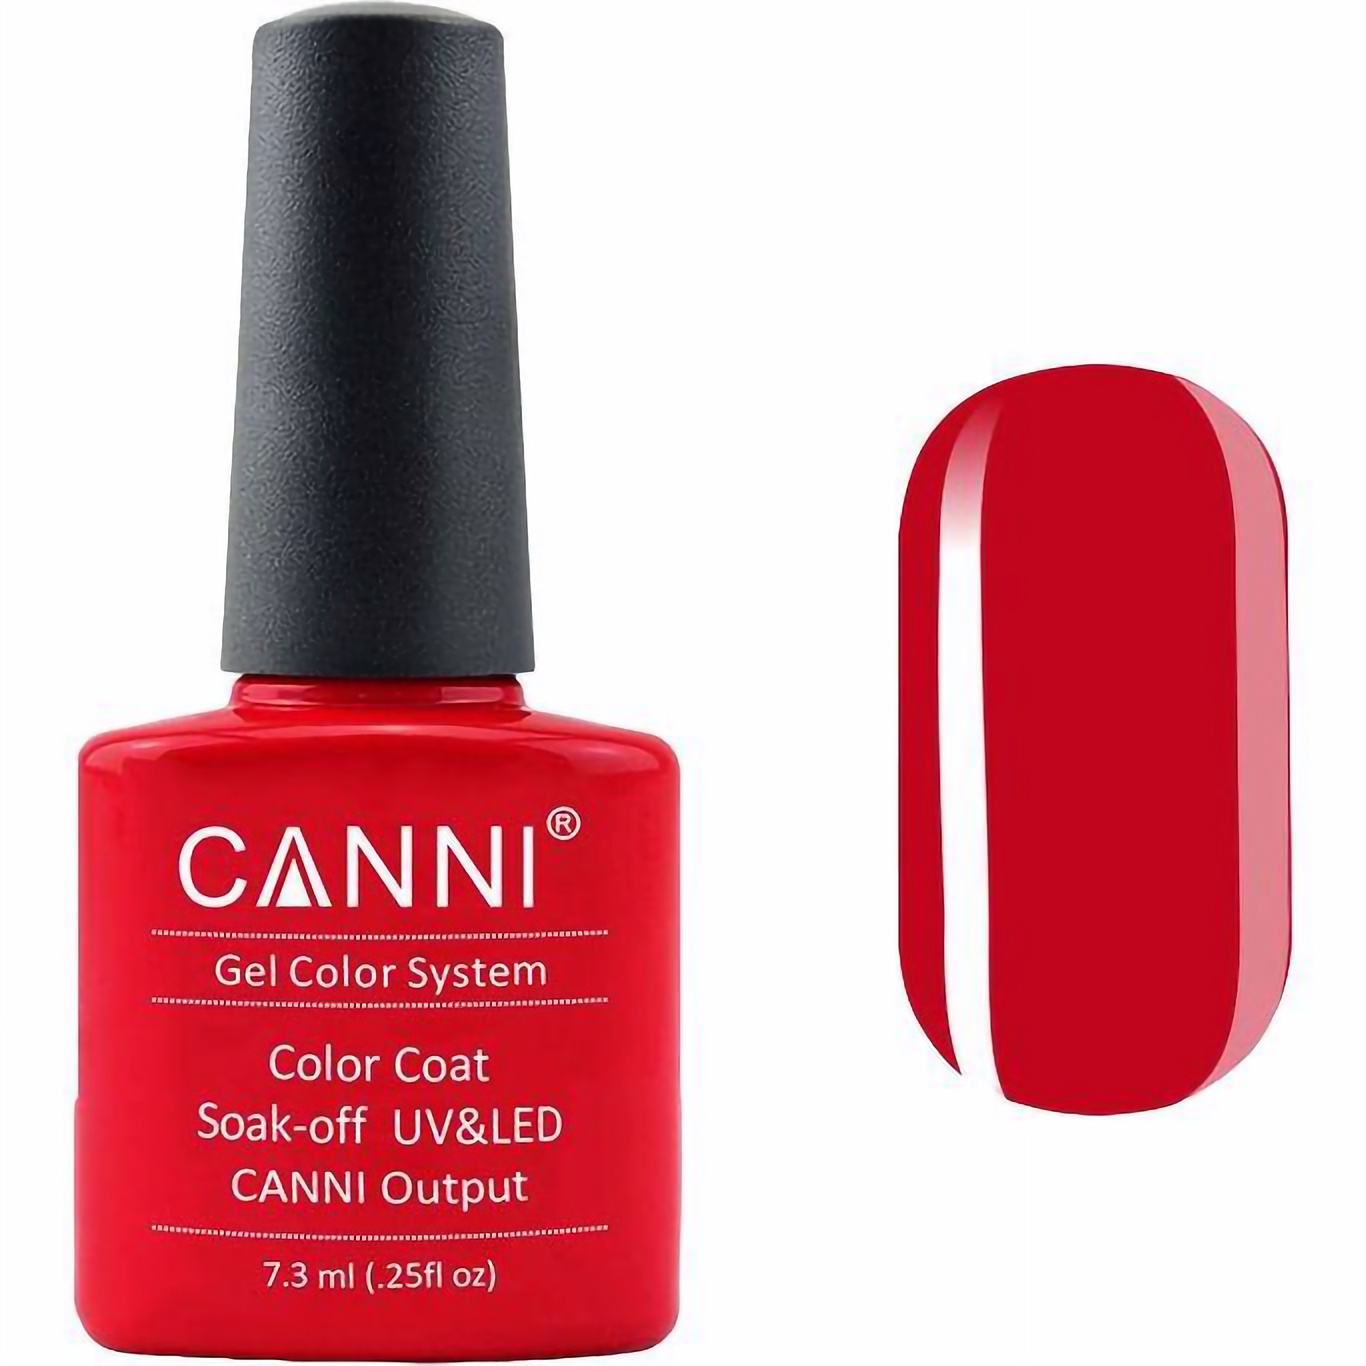 Гель-лак Canni Color Coat Soak-off UV&LED 105 яркий красный 7.3 мл - фото 1